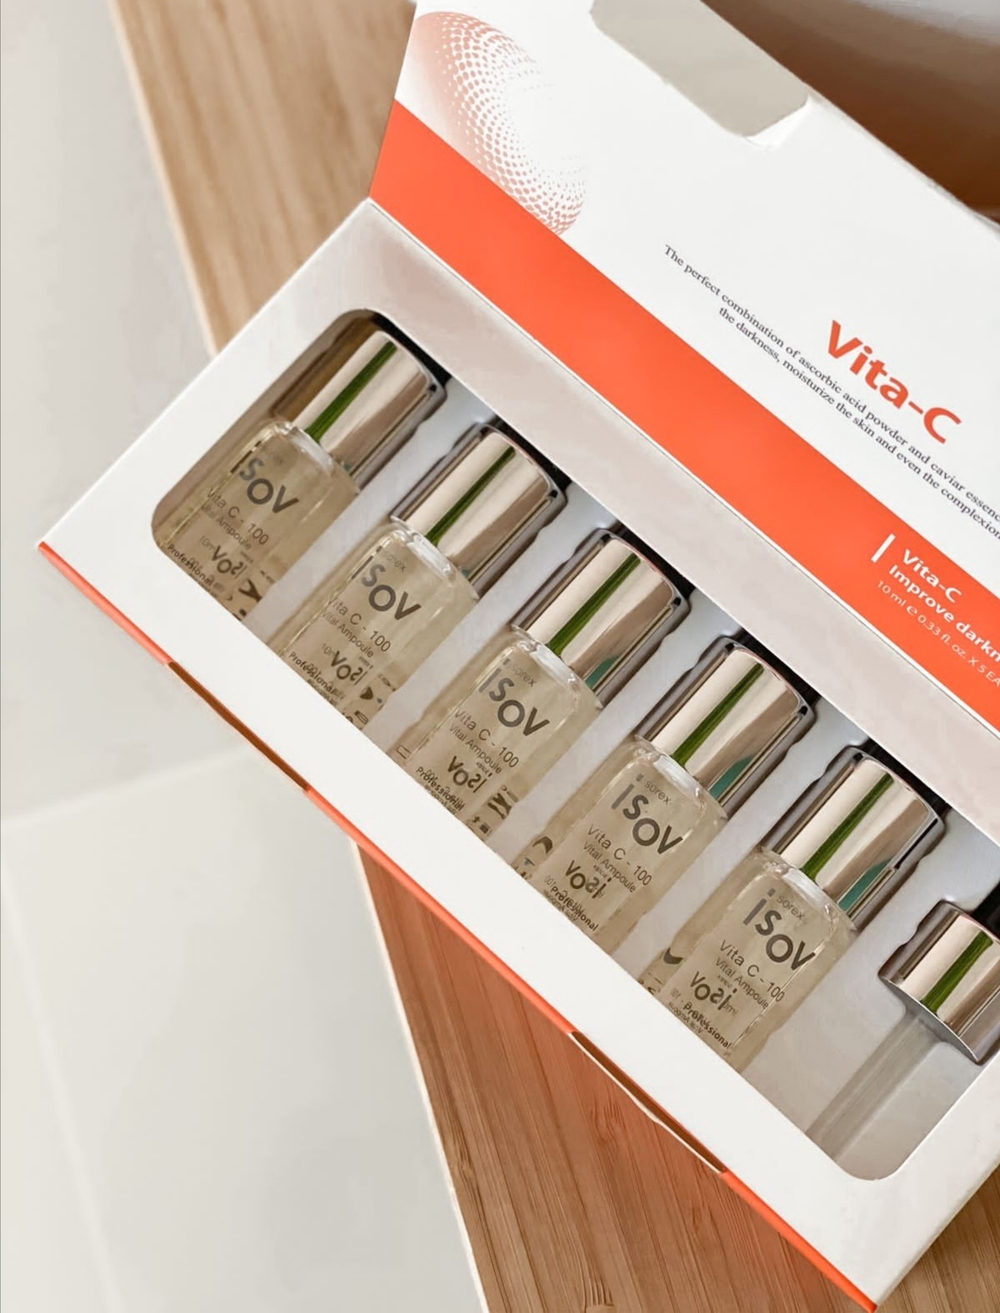 Осветляющая сыворотка Vita C набор (5 флаконов по 10 мл)